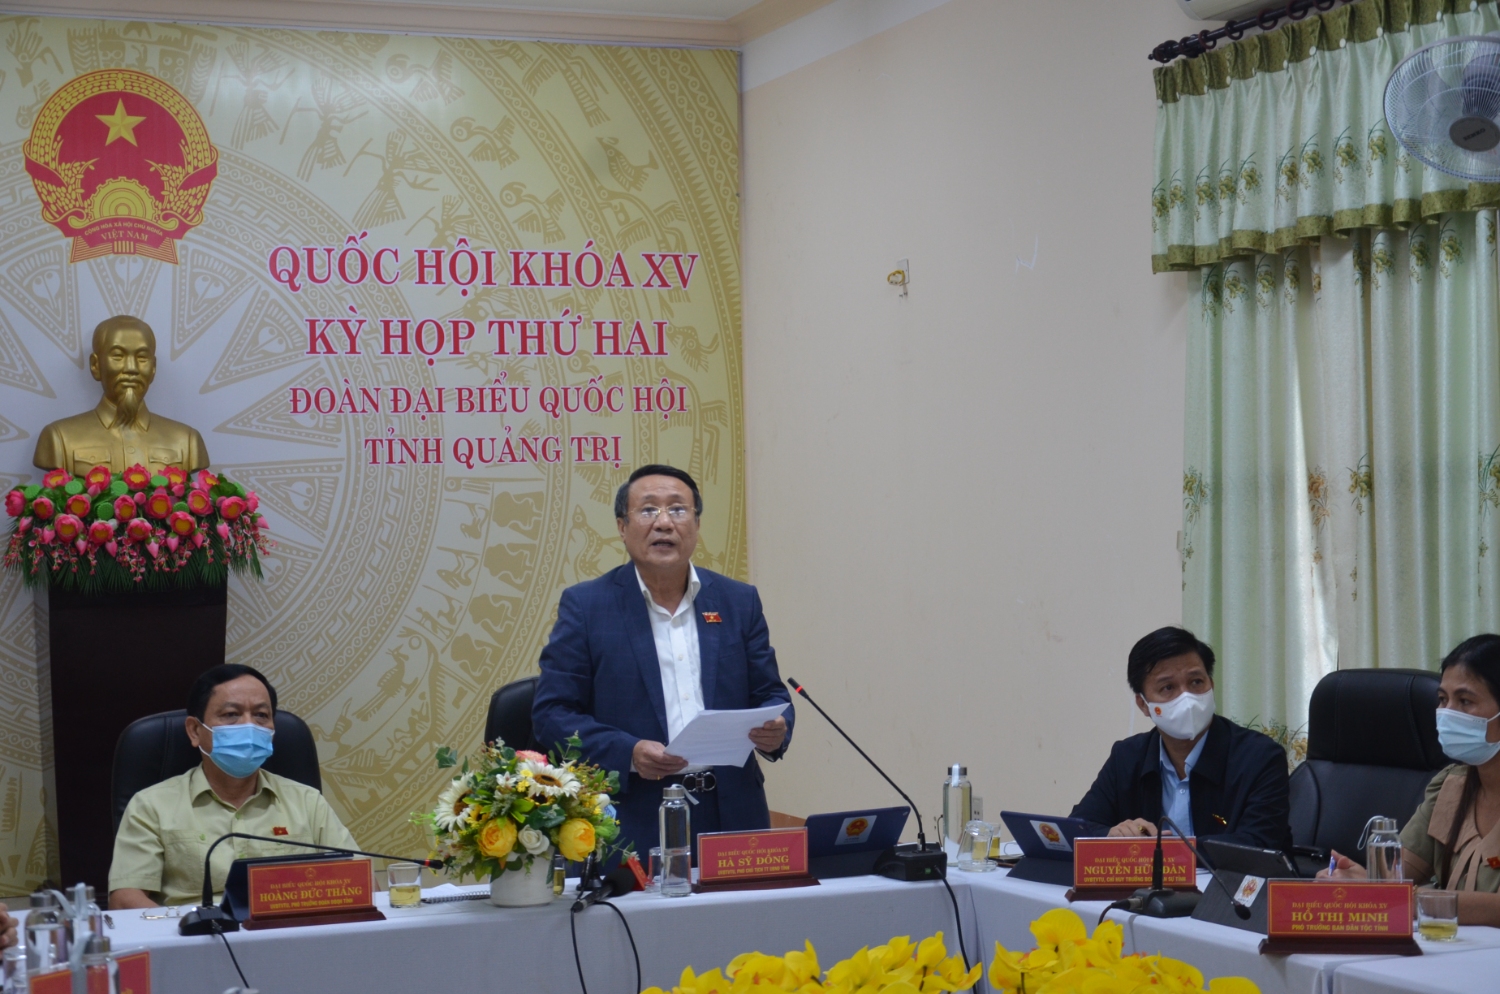 Đại biểu Hà Sỹ Đồng - Đoàn ĐBQH tỉnh Quảng Trị phát biểu tại buổi thảo luận trực tuyến